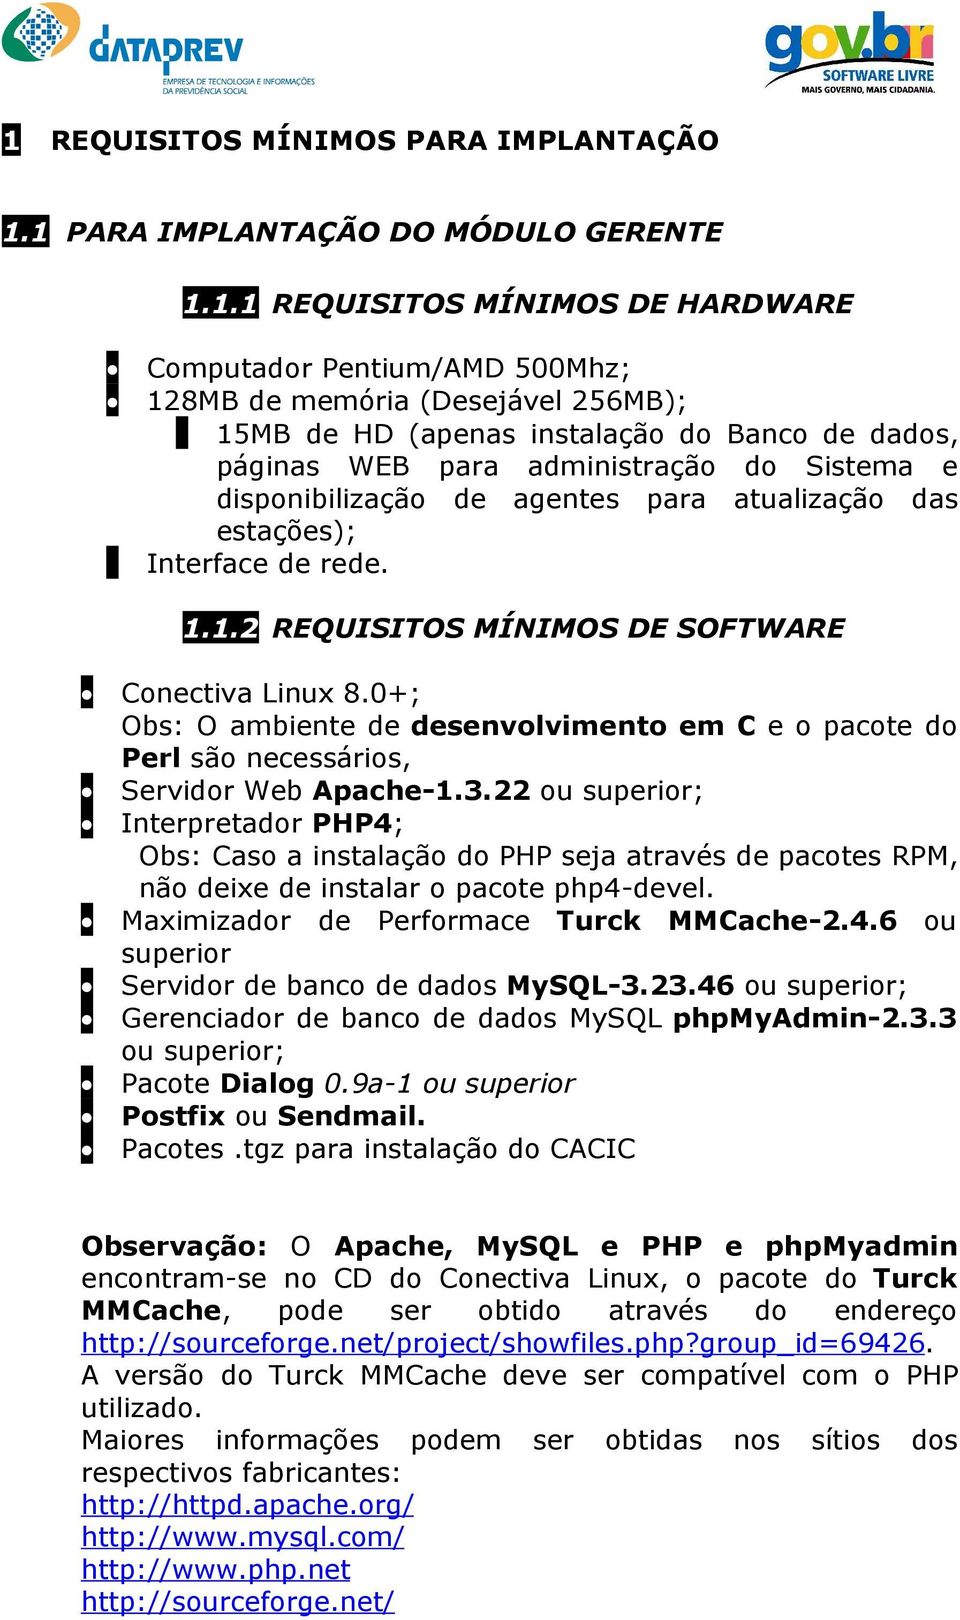 1.2 REQUISITOS MÍNIMOS DE SOFTWARE Conectiva Linux 8.0+; Obs: O ambiente de desenvolvimento em C e o pacote do Perl são necessários, Servidor Web Apache-1.3.